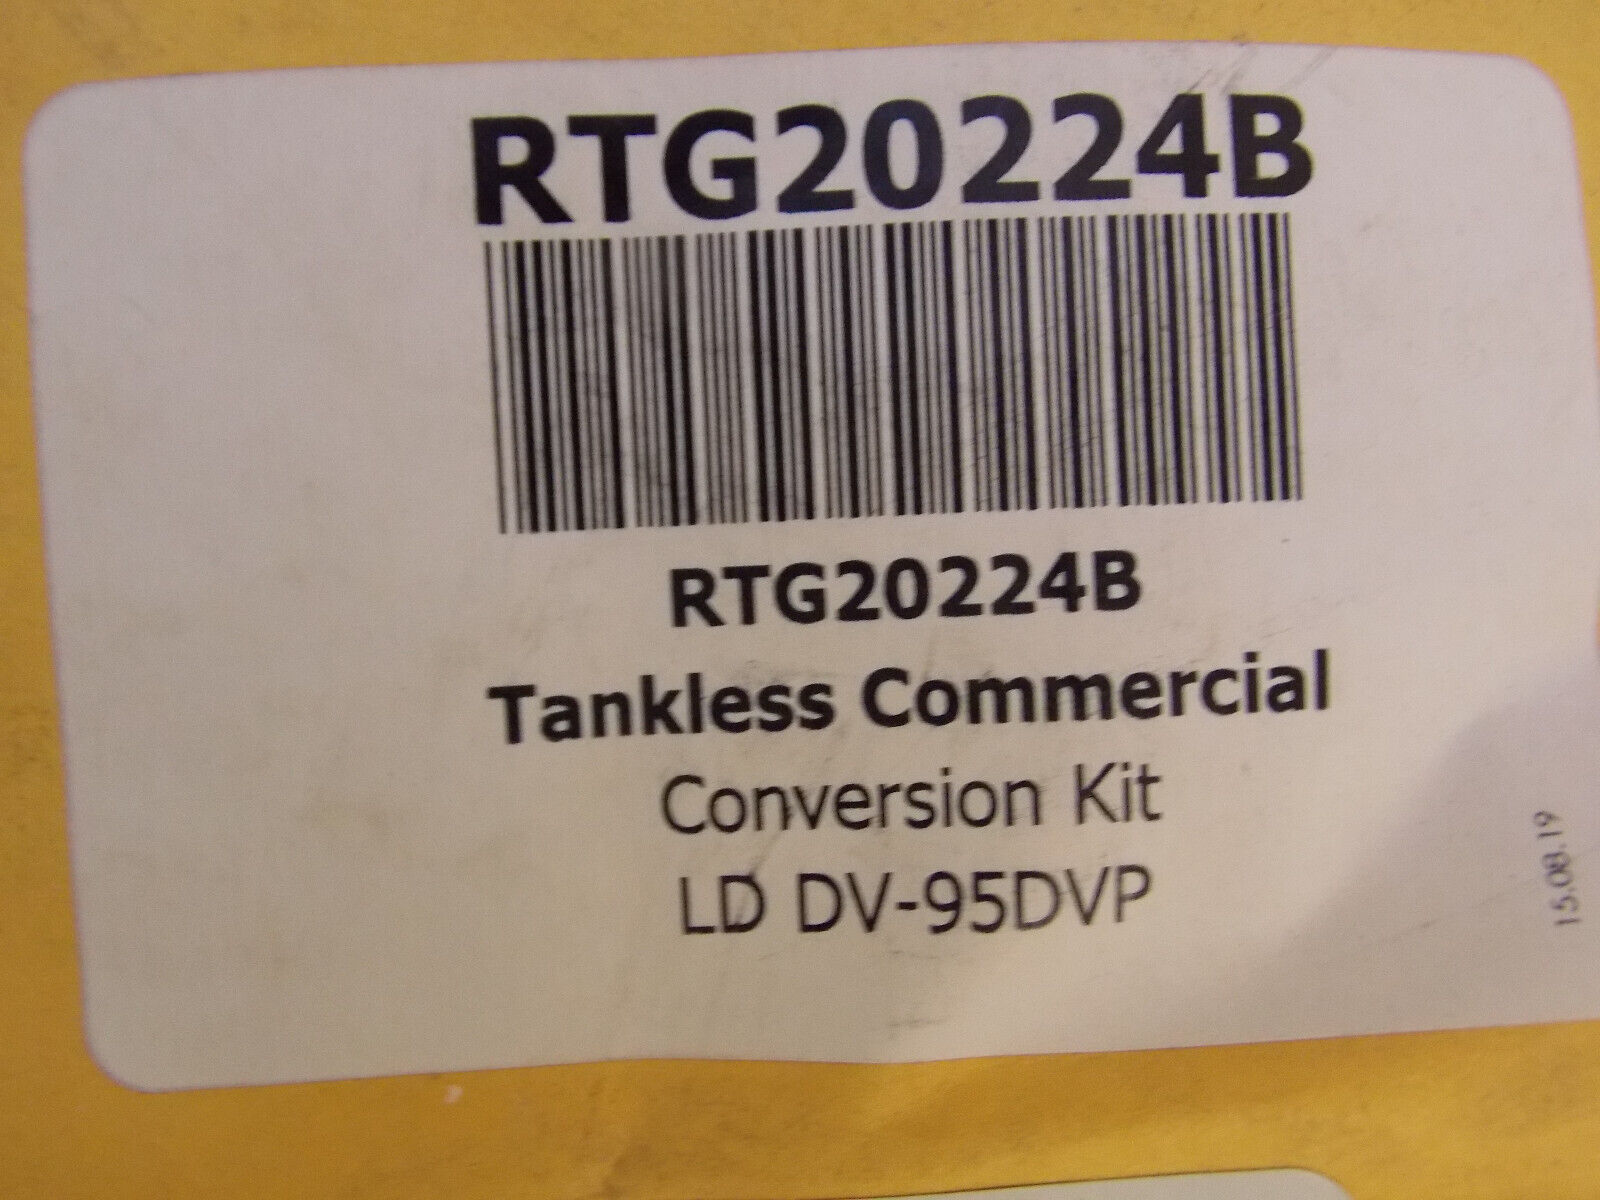 Rheem Tankless Commercial Conversion Kit RTG20224B - LD DV-95DVP - $22.50